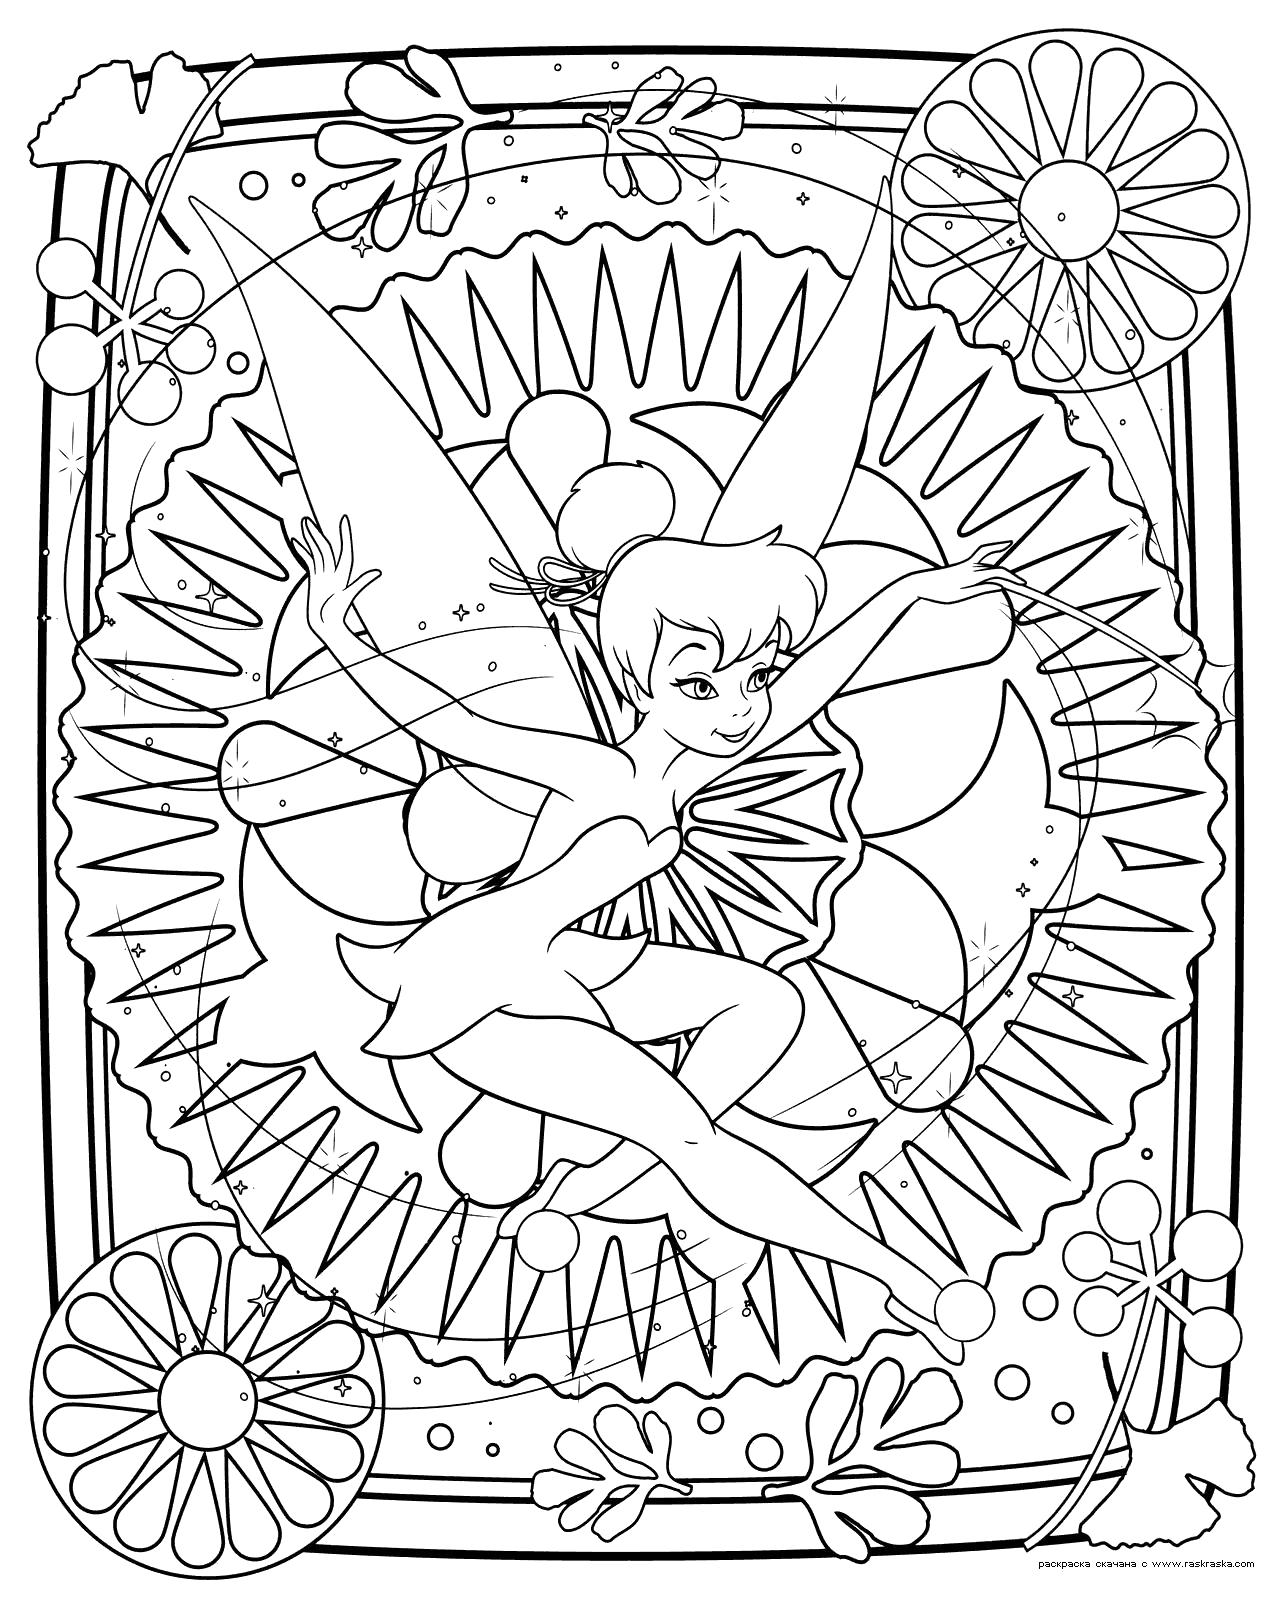 Раскраска   феи Динь-Динь.  Разукрашка из мультфильма Феи.  для девочек Динь-Динь - это маленькая фея. Скачать фея.  Распечатать мифические существа